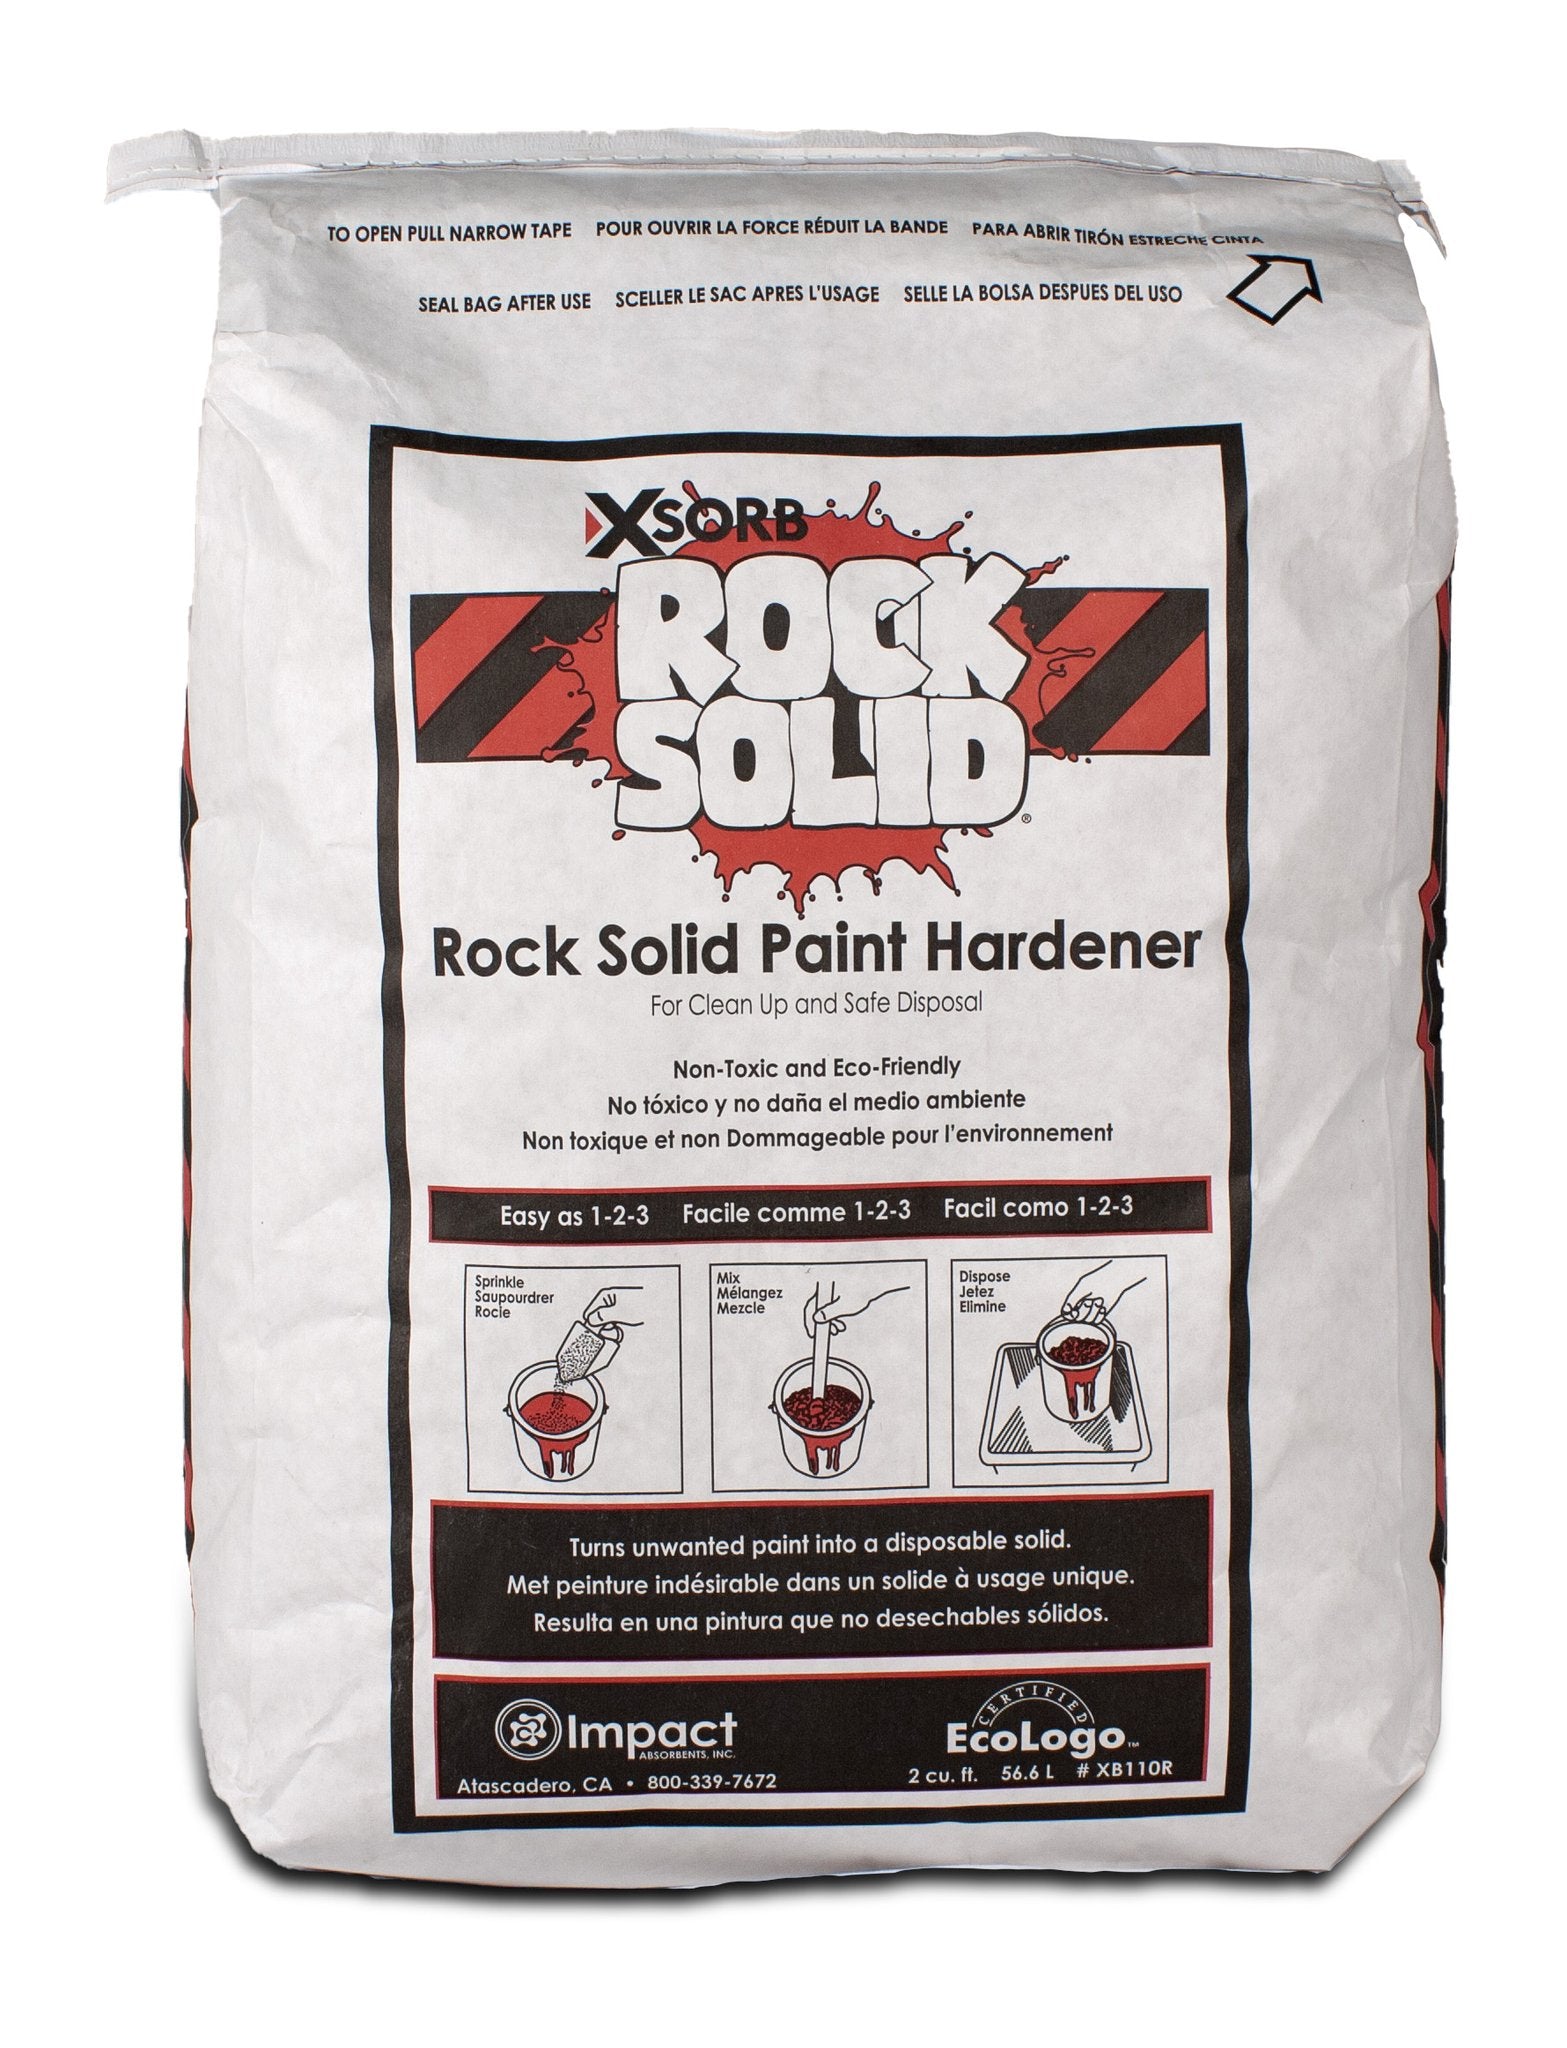 XSORB Rock Solid Paint Hardener Bag 1.75 cu. ft. - 1 BAG